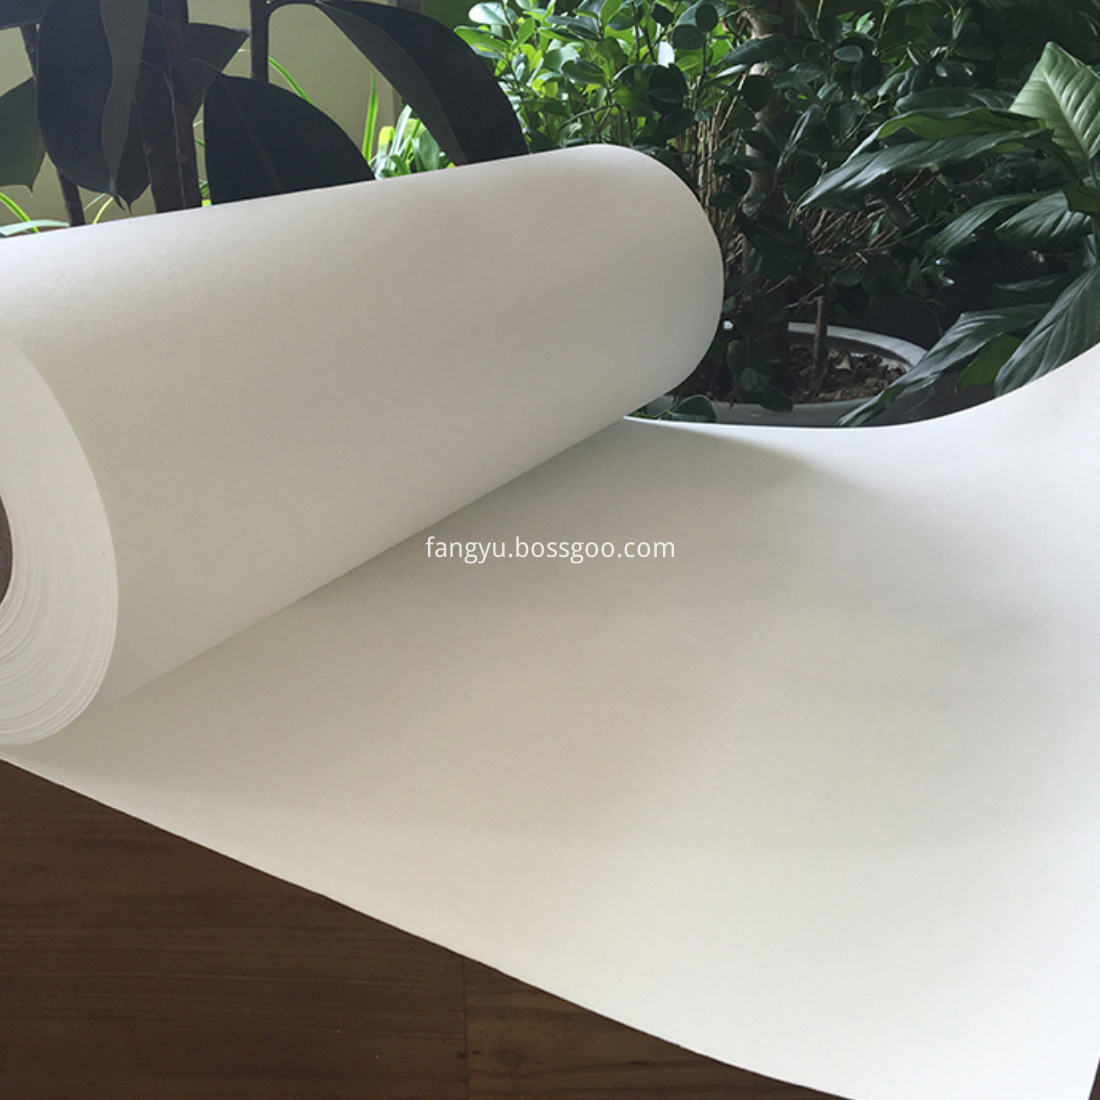 fiberglass liquid filter paper